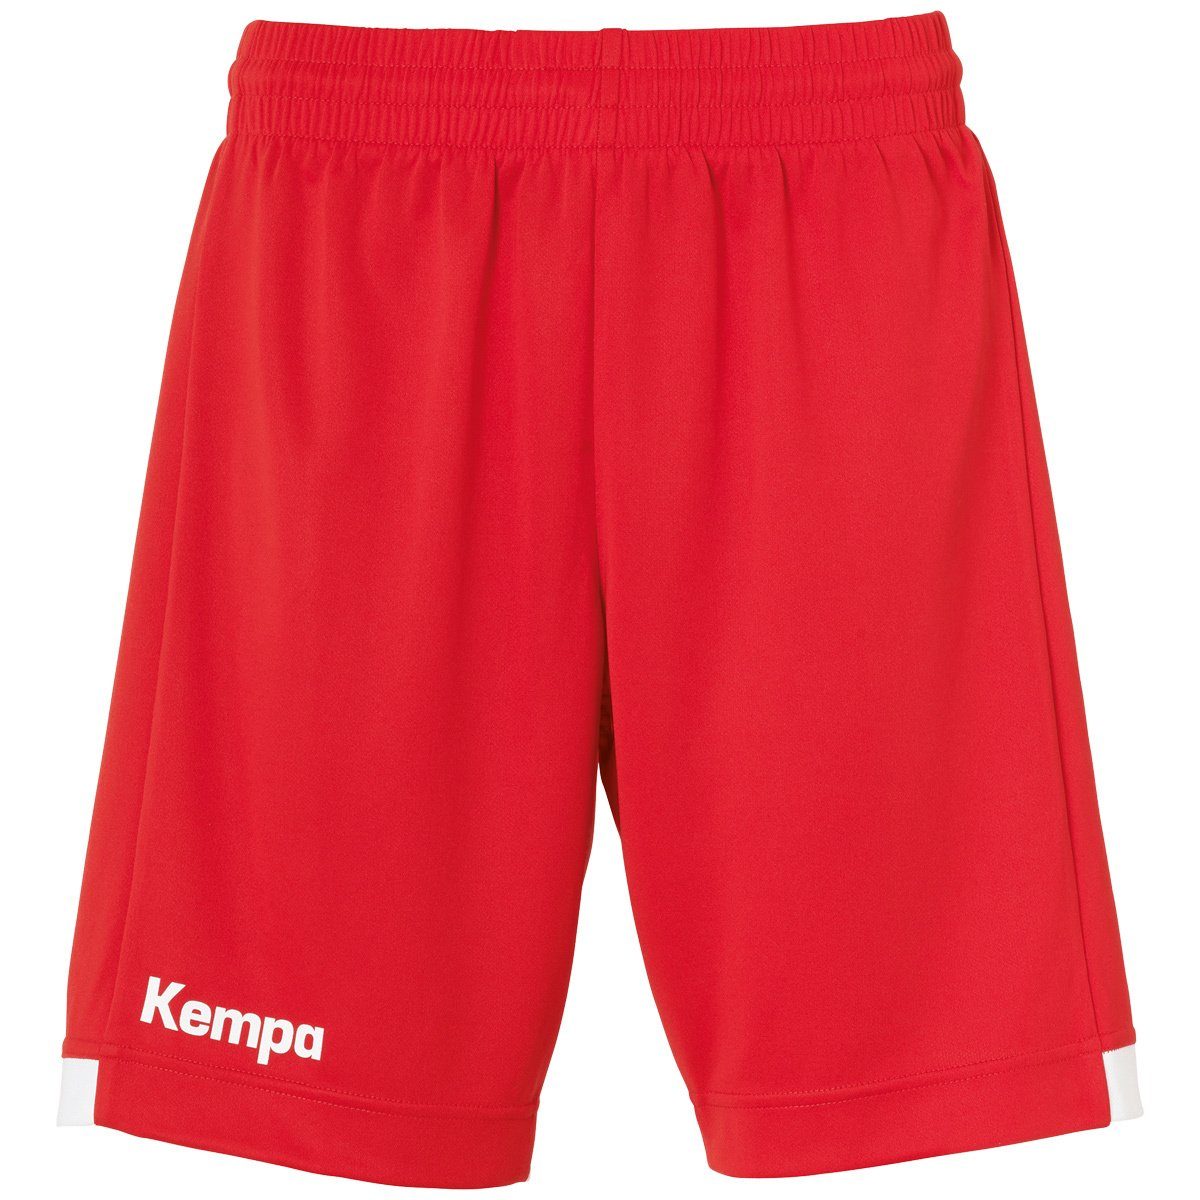 Kempa Shorts Kempa Shorts PLAYER LONG SHORTS WOMEN rot/weiß